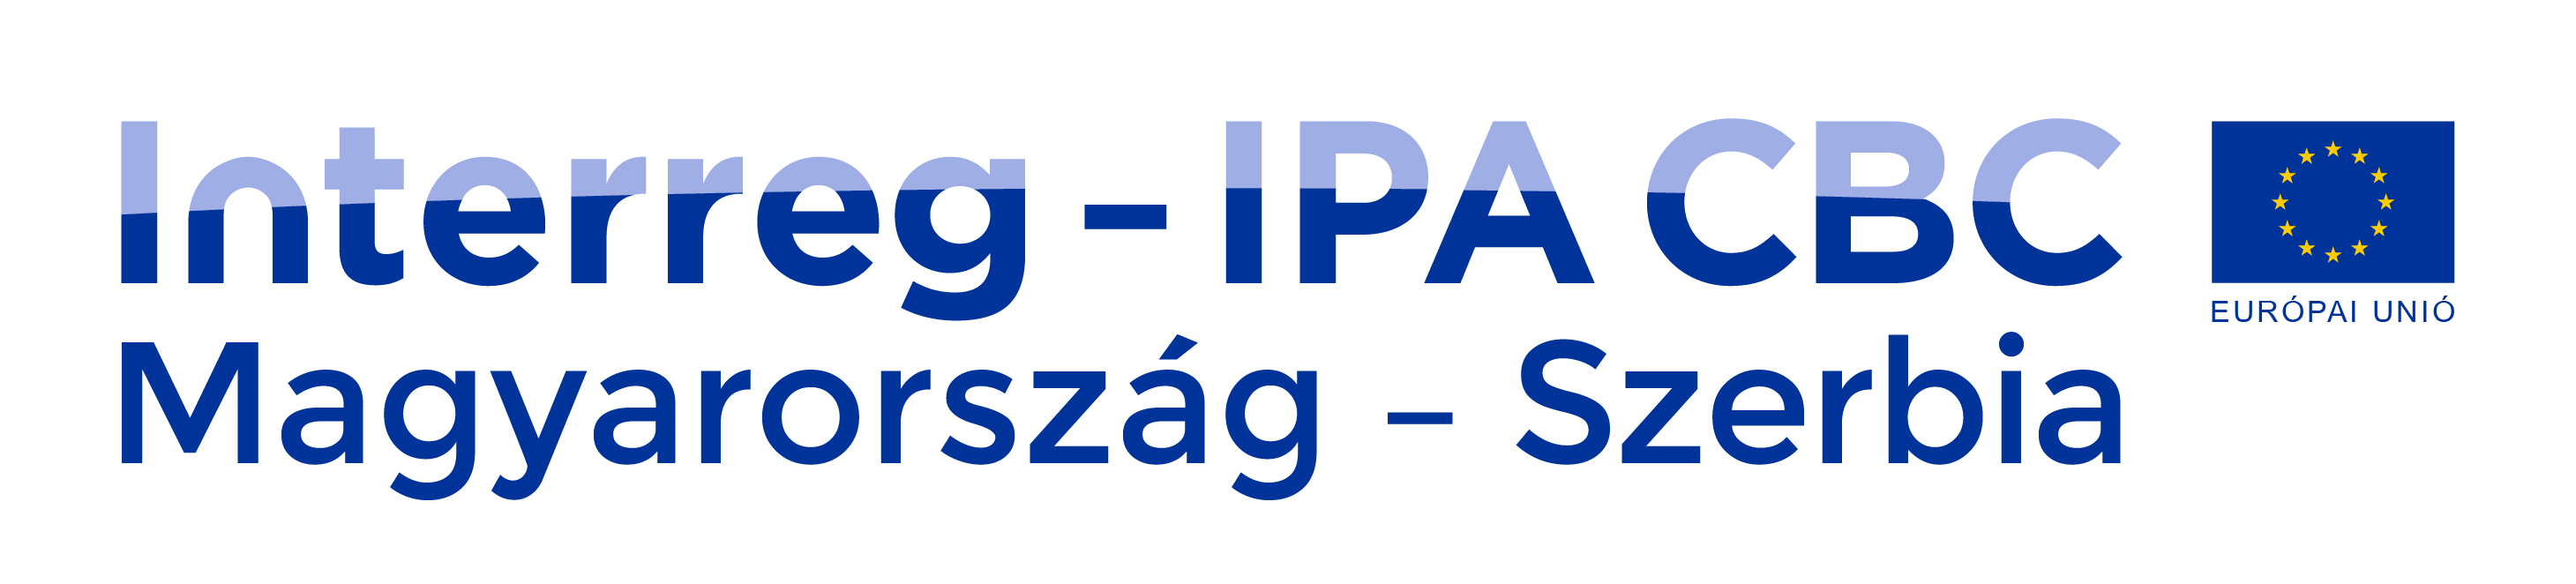 Interreg - IPA CBC Magyarország - Szerbia